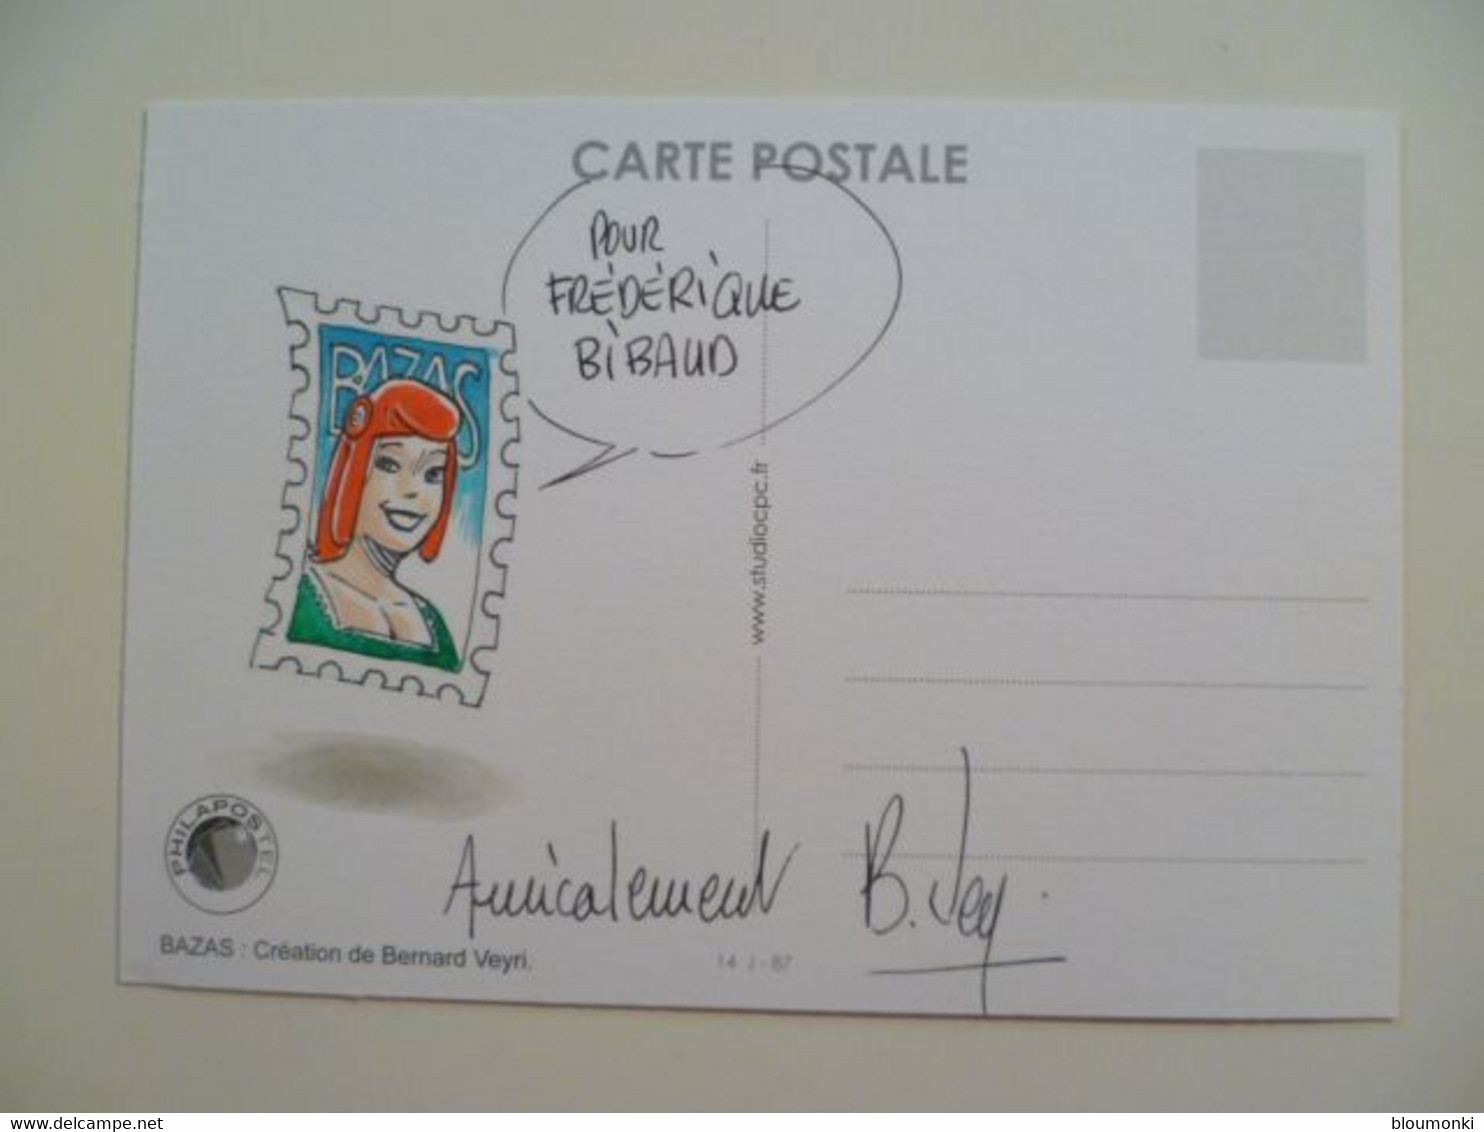 Carte Postale Illustrateur Bernard VEYRI / Dessin Unique Dédicace Frédérique Bibaud / BAZAS Ch St Jacques De Compostelle - Veyri, Bernard